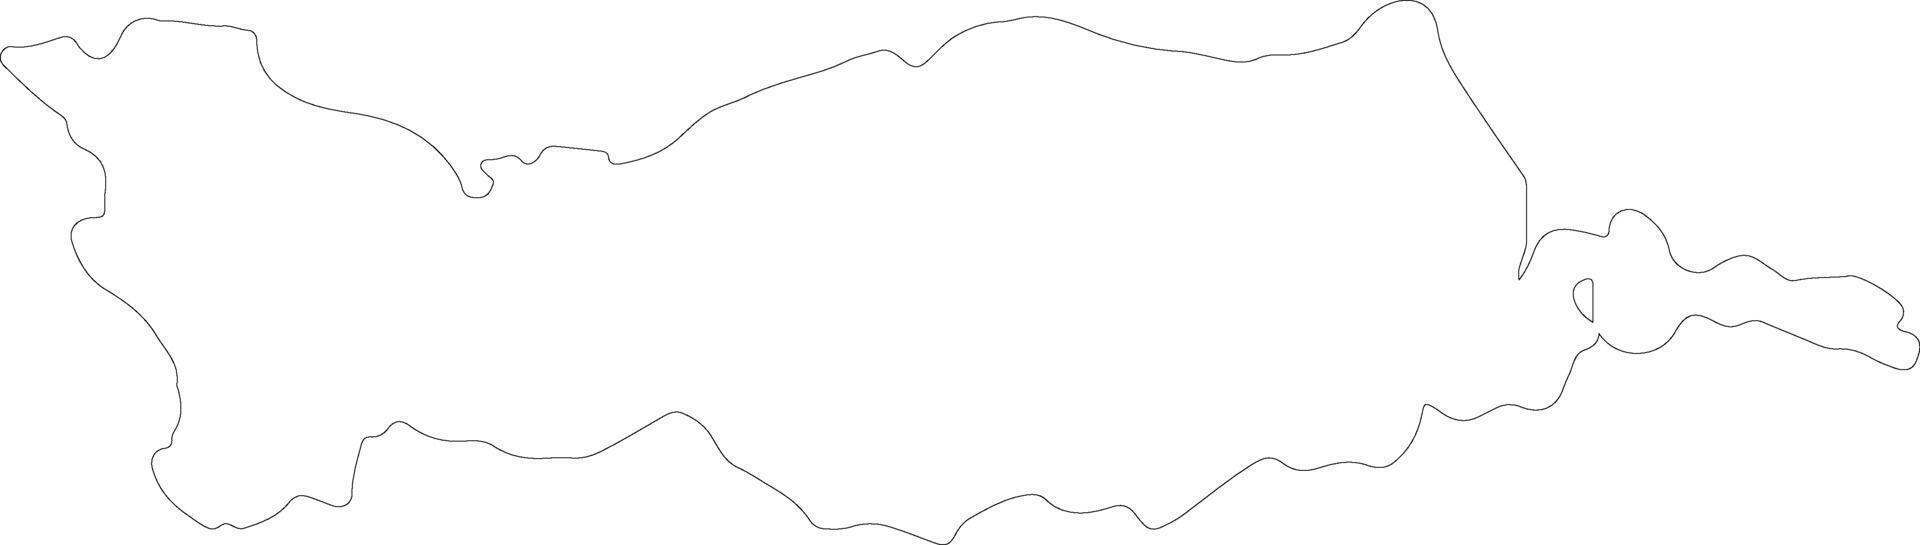 nicosia Chipre contorno mapa vector